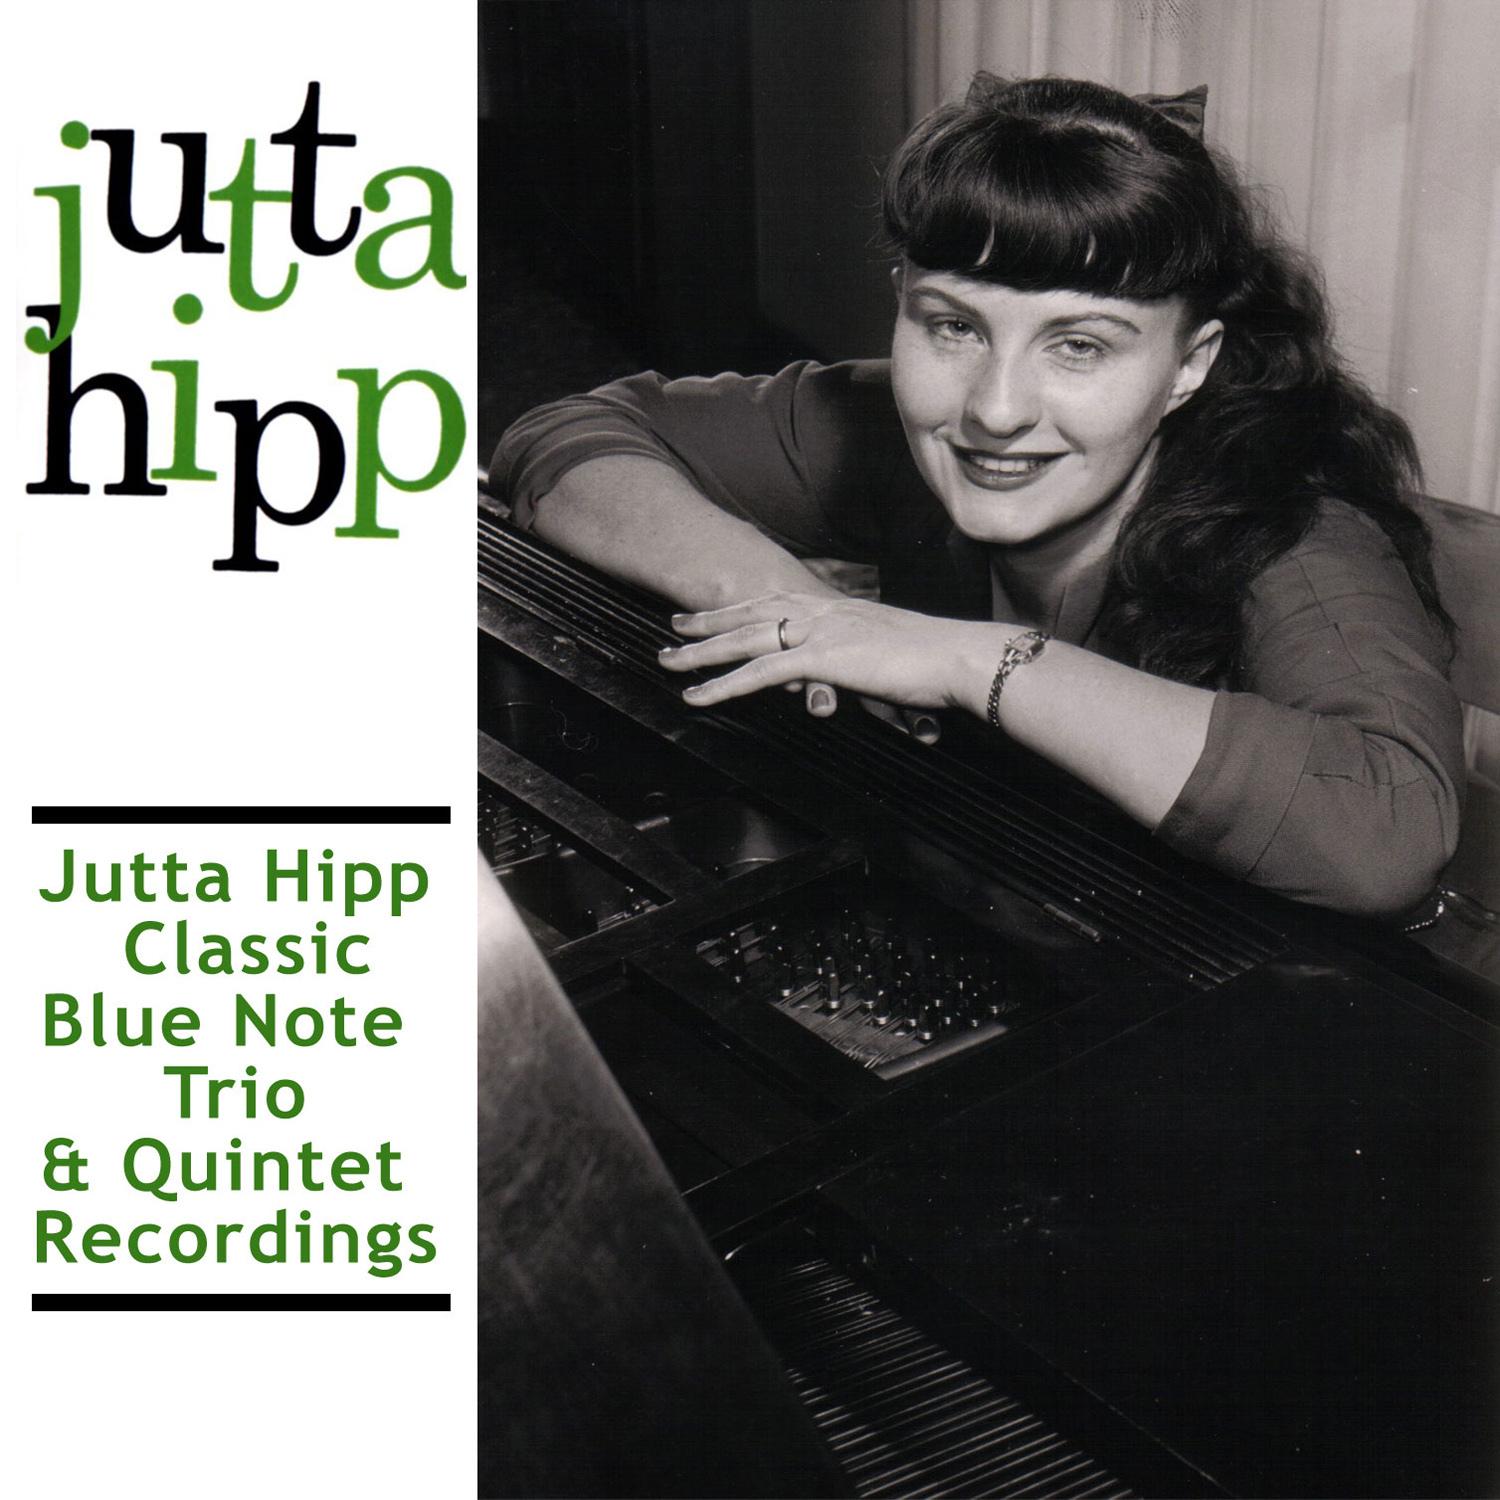 Jutta Hipp Classic Blue Note Trio & Quintet Recordings